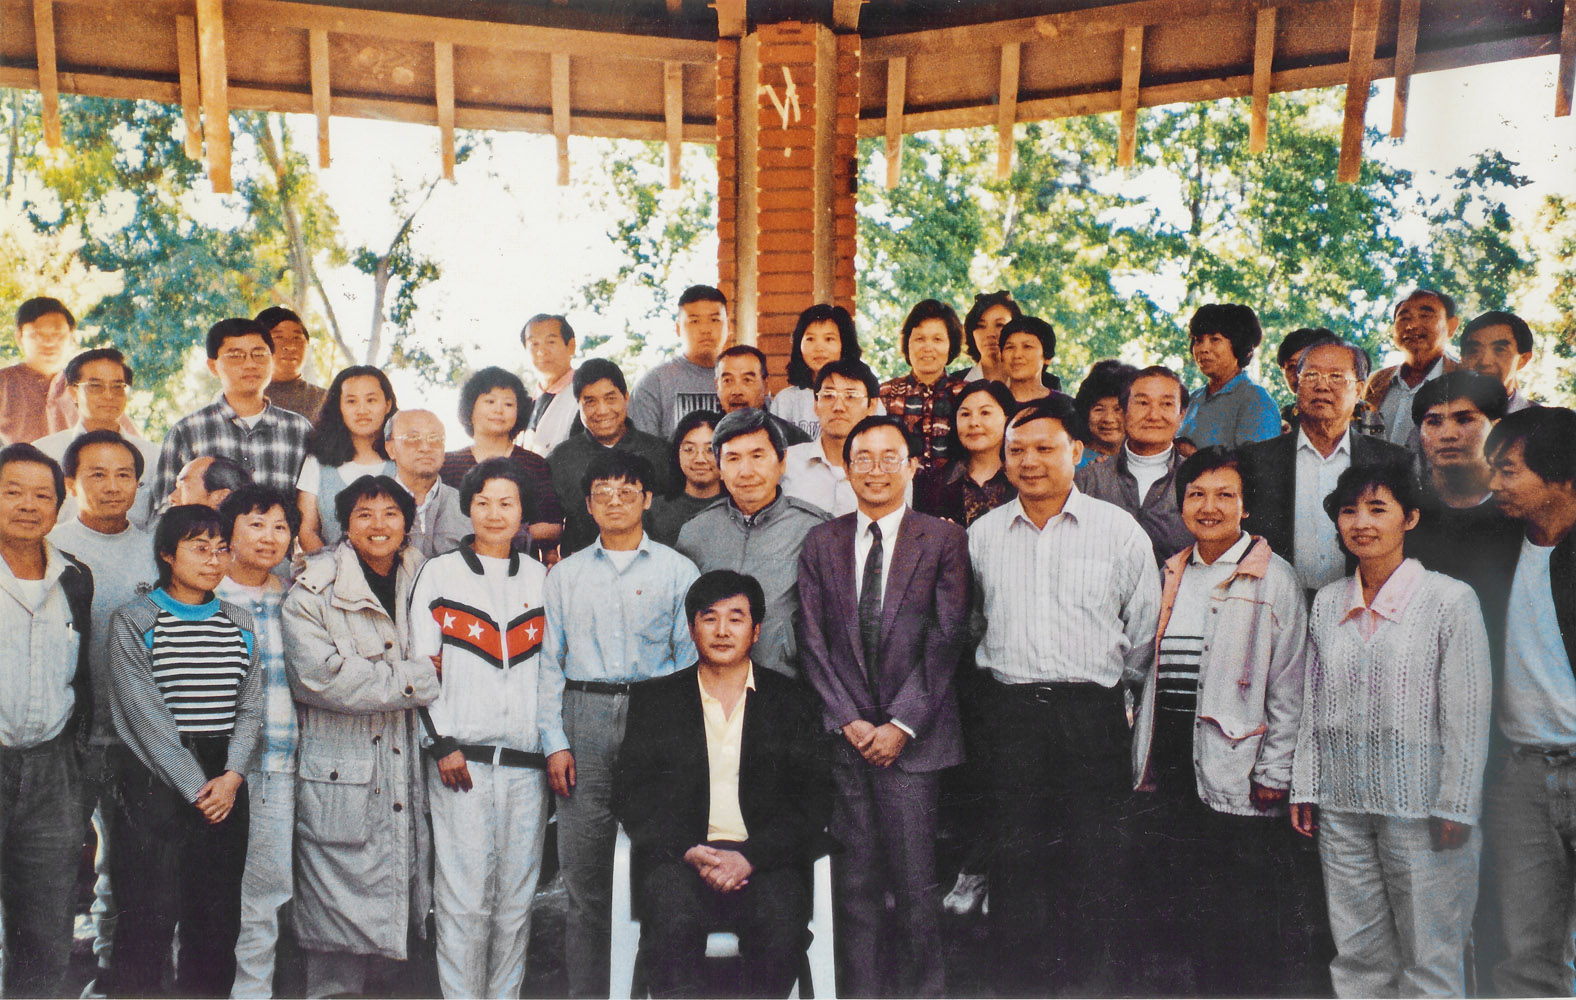 Đại sư Lý Hồng Chí (ngồi giữa) và các học viên ở San Francisco Bay Area, chụp ngày 05 tháng 10 năm 1996 